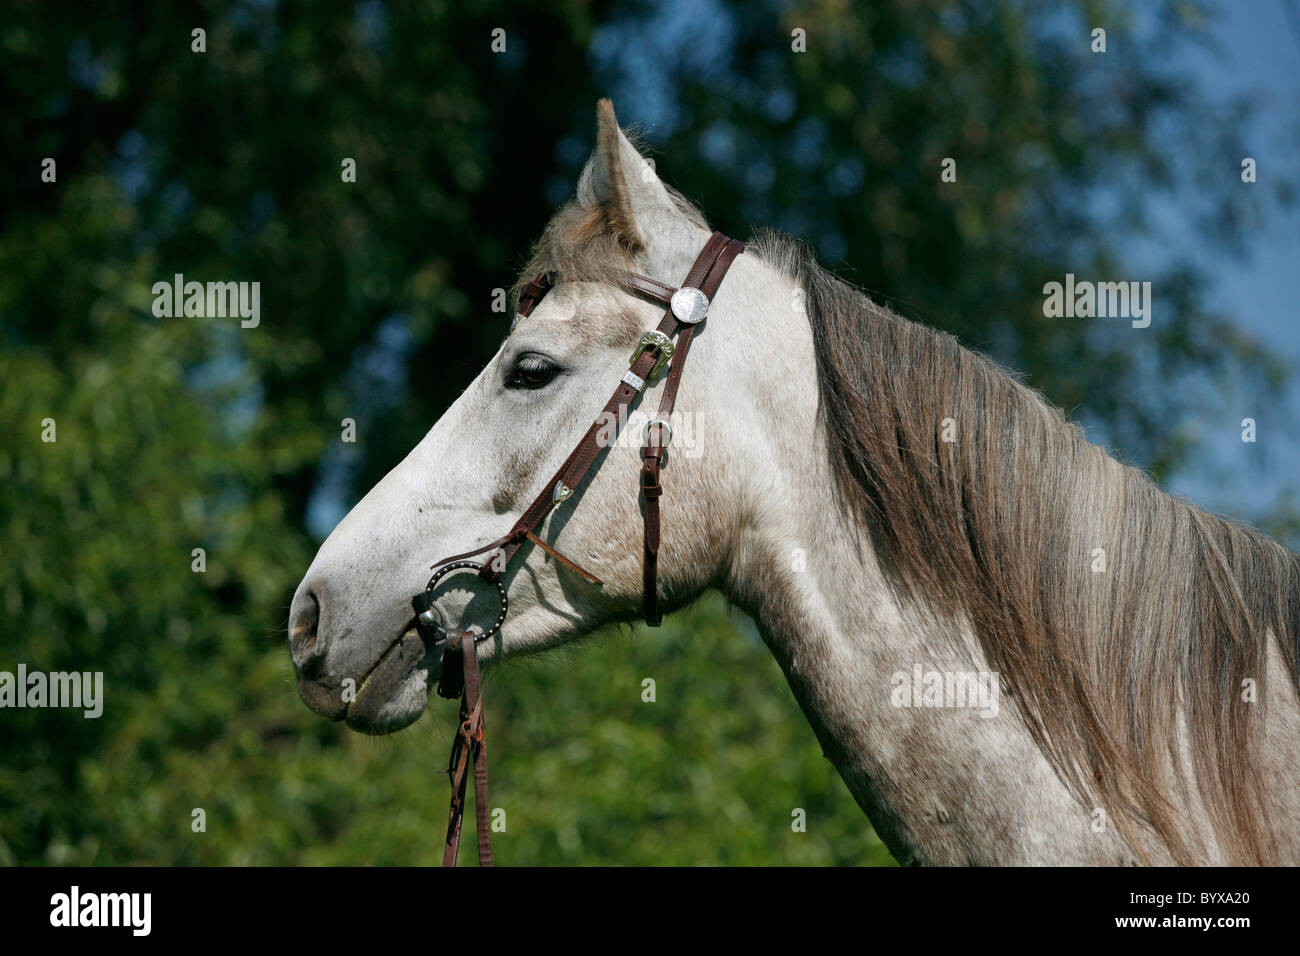 Schimmel Portrait / white horse Stock Photo